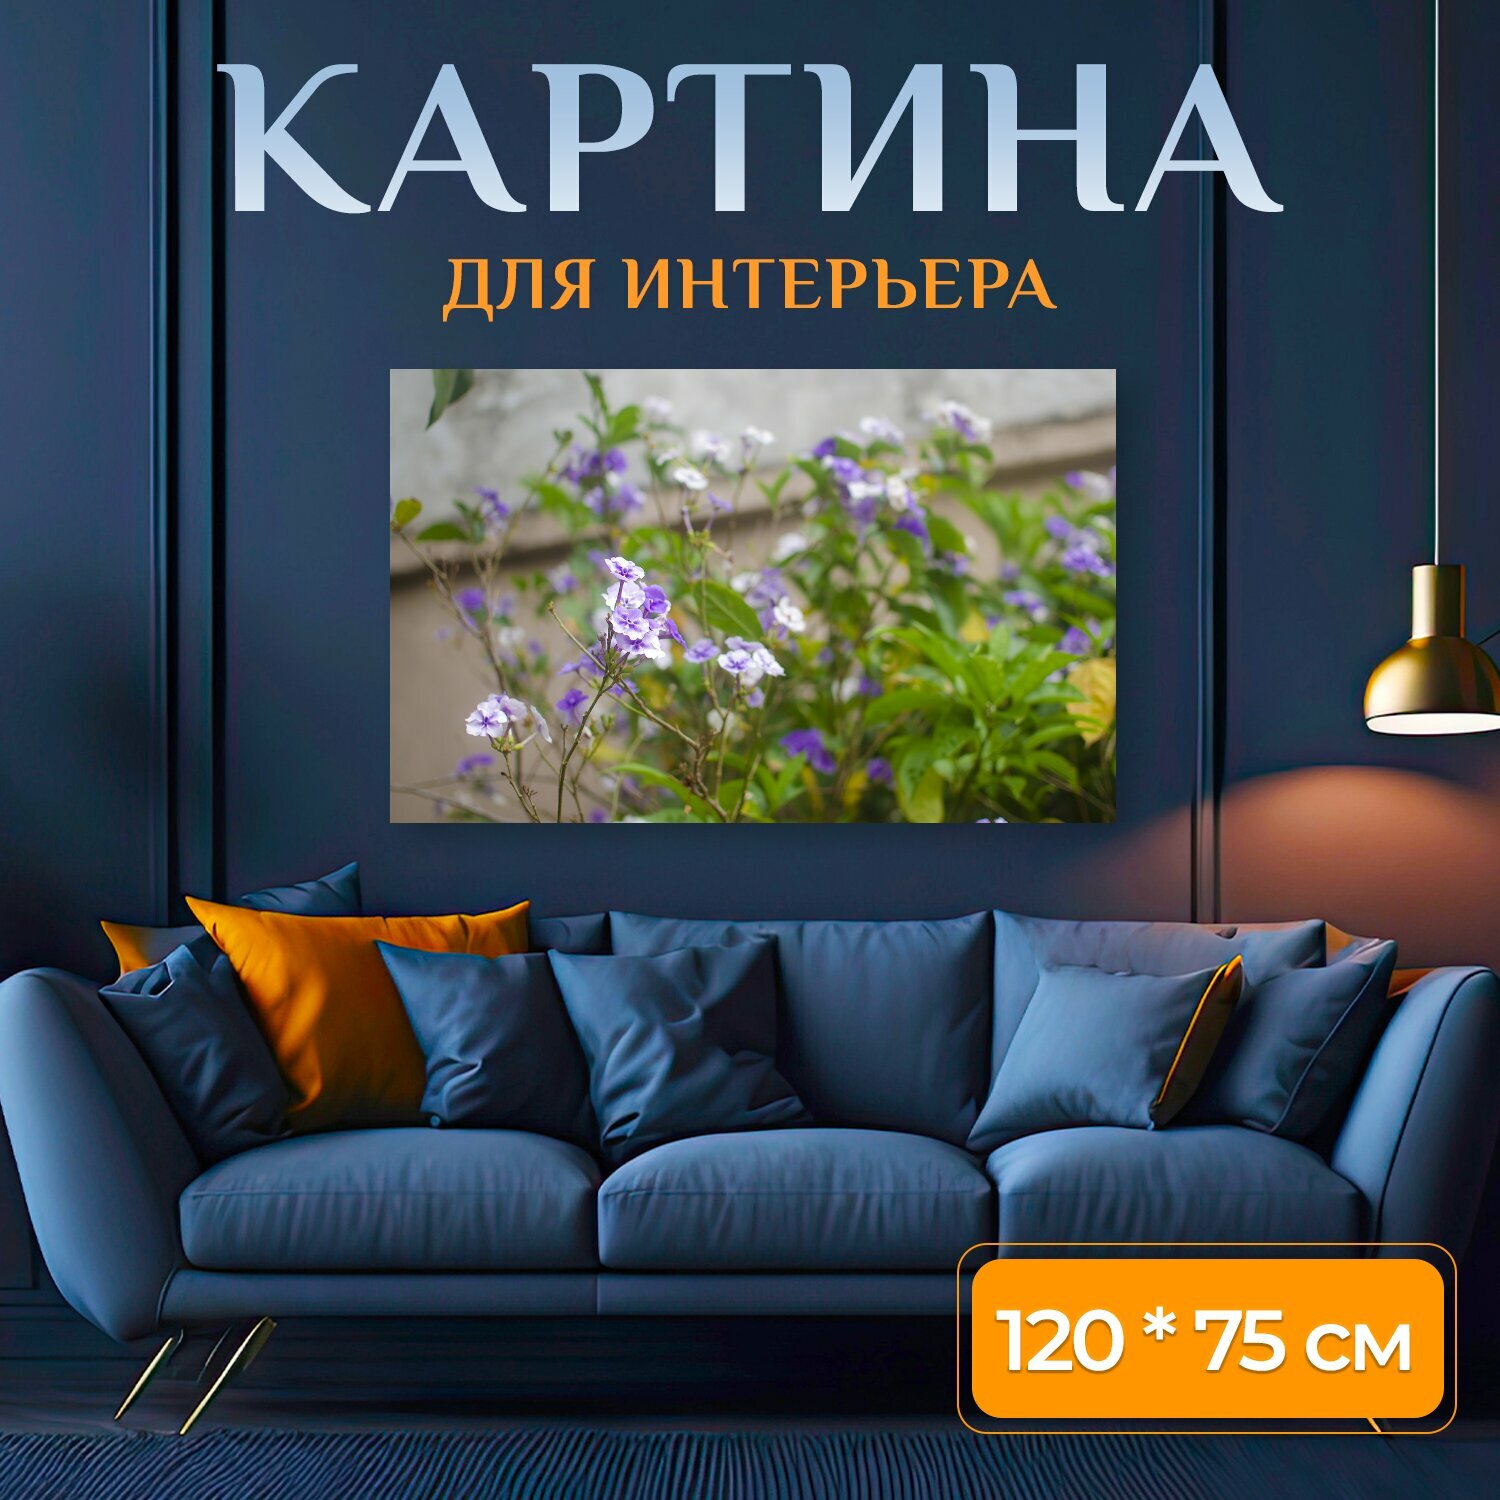 Картина на холсте "Любитель садоводства, для садовника, любитель растений" на подрамнике 120х75 см. для интерьера